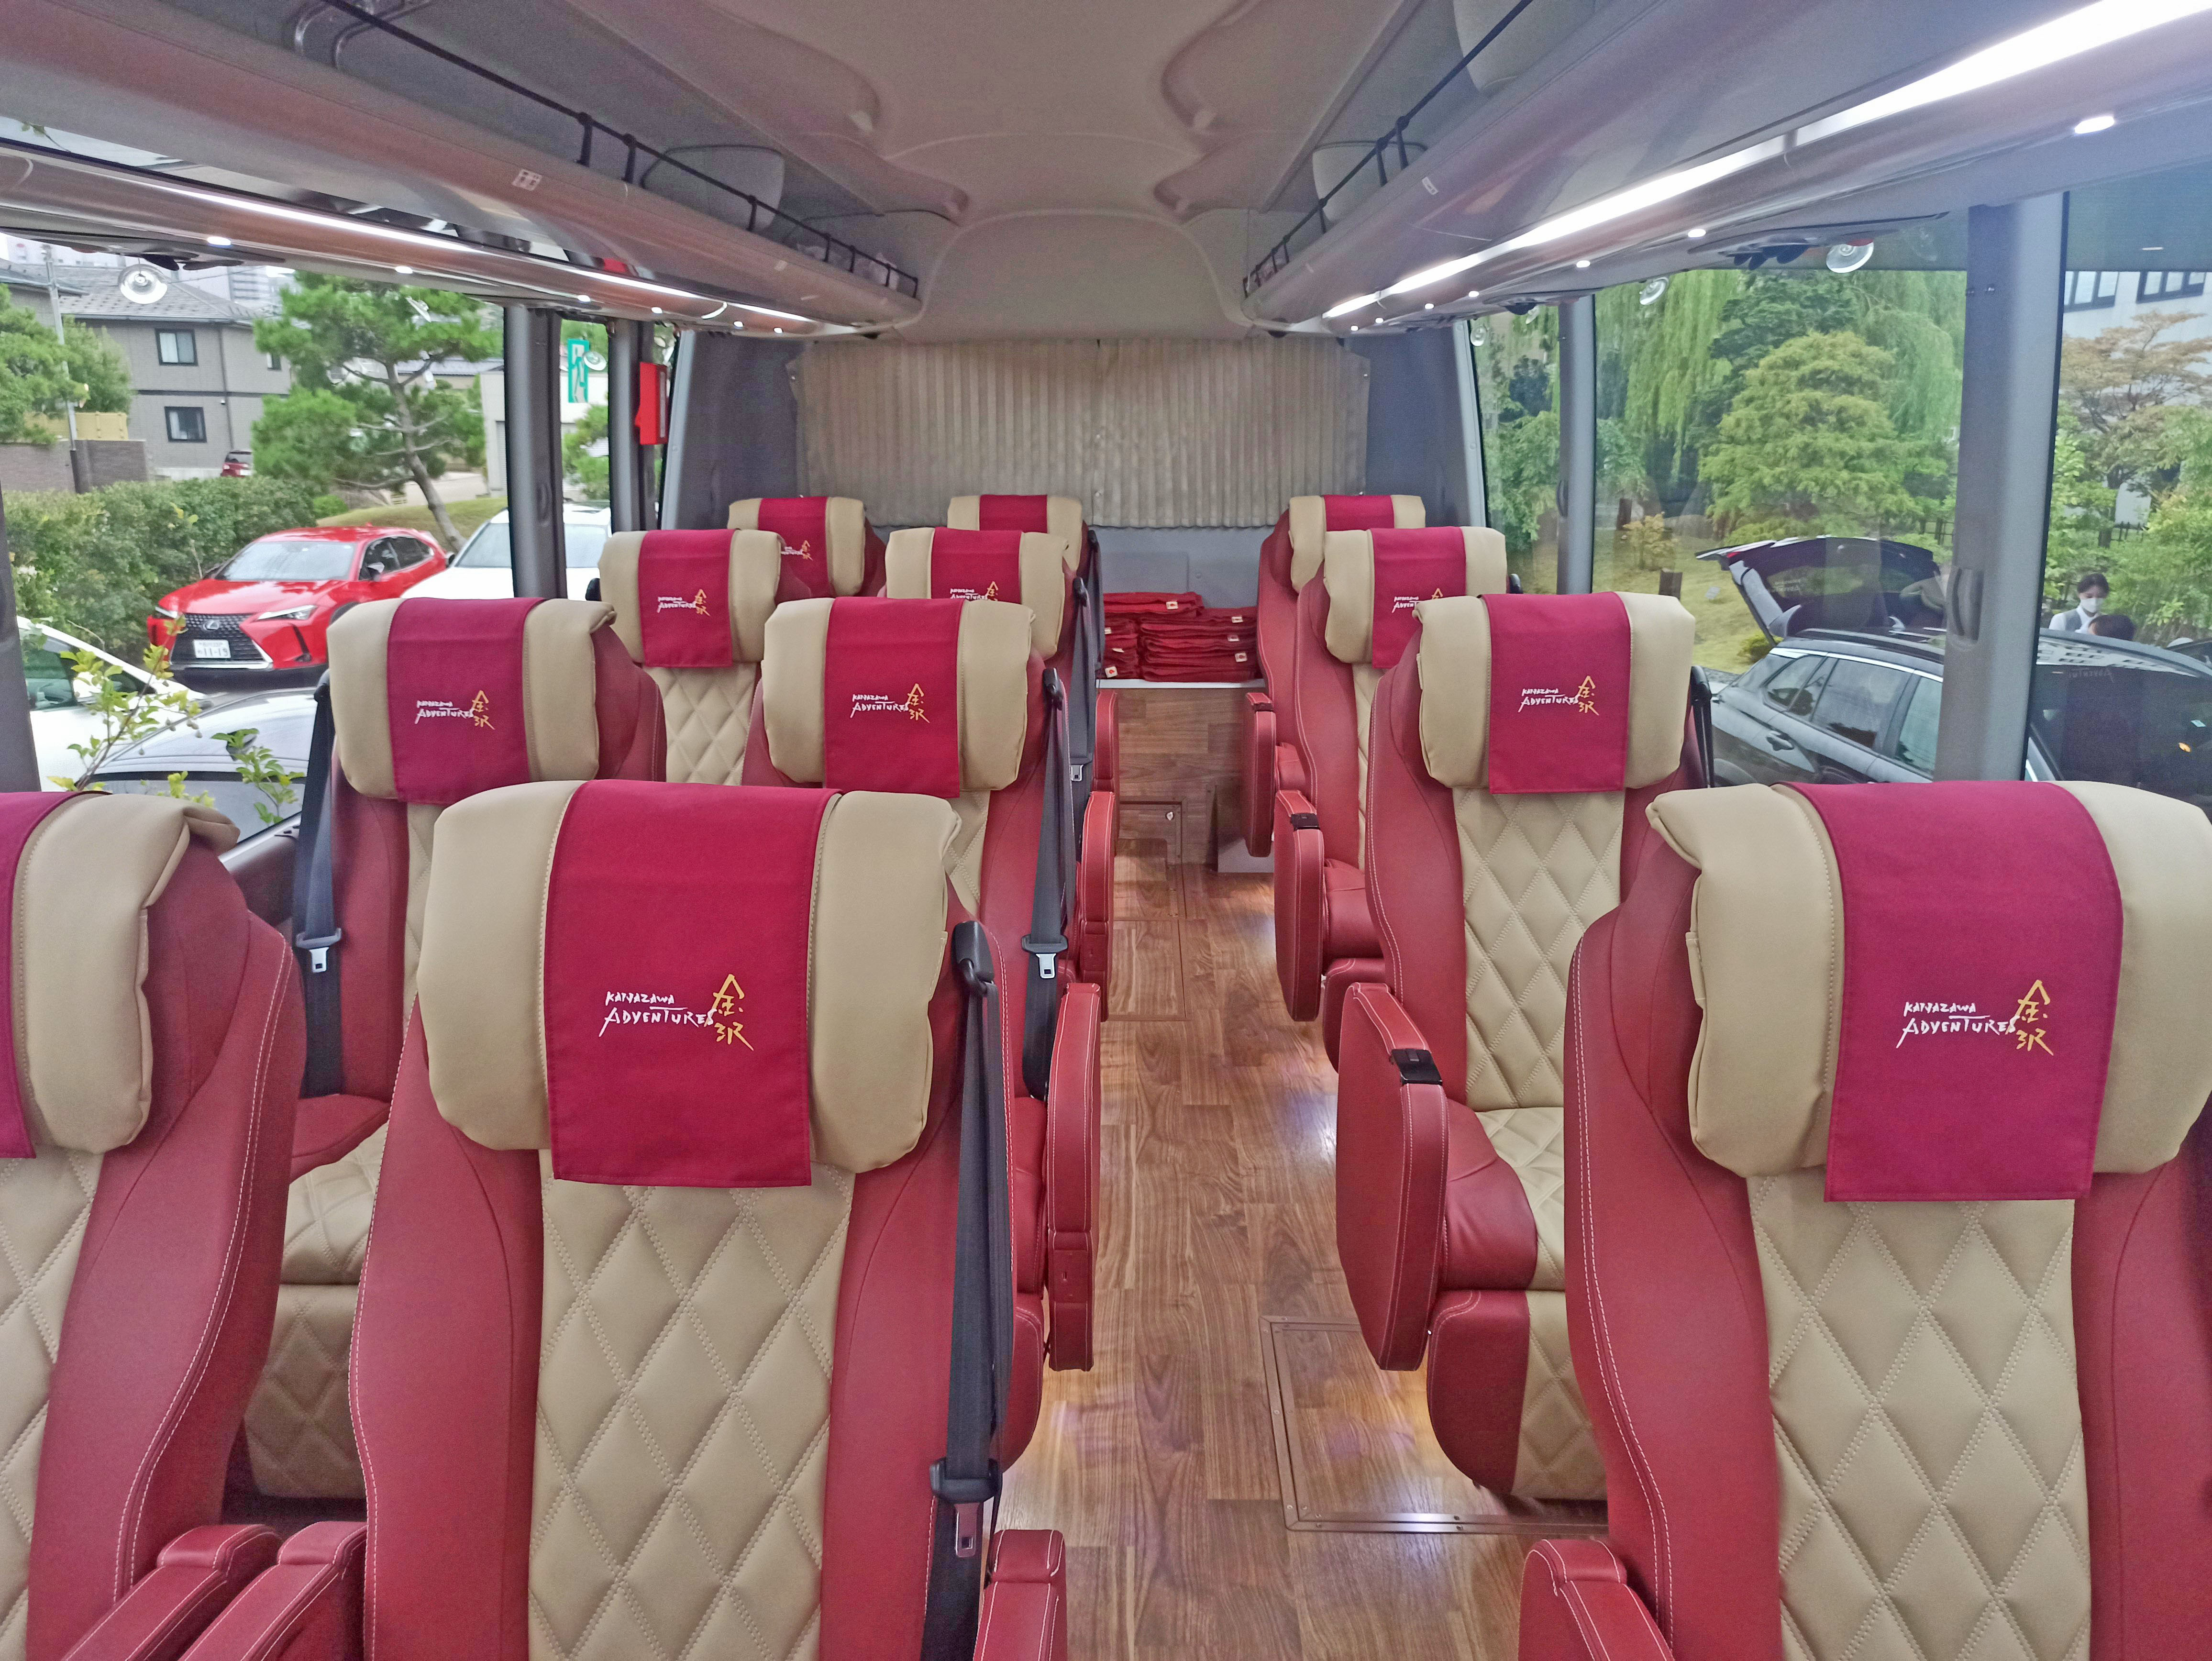 Kanazawa Adventures tour bus interior